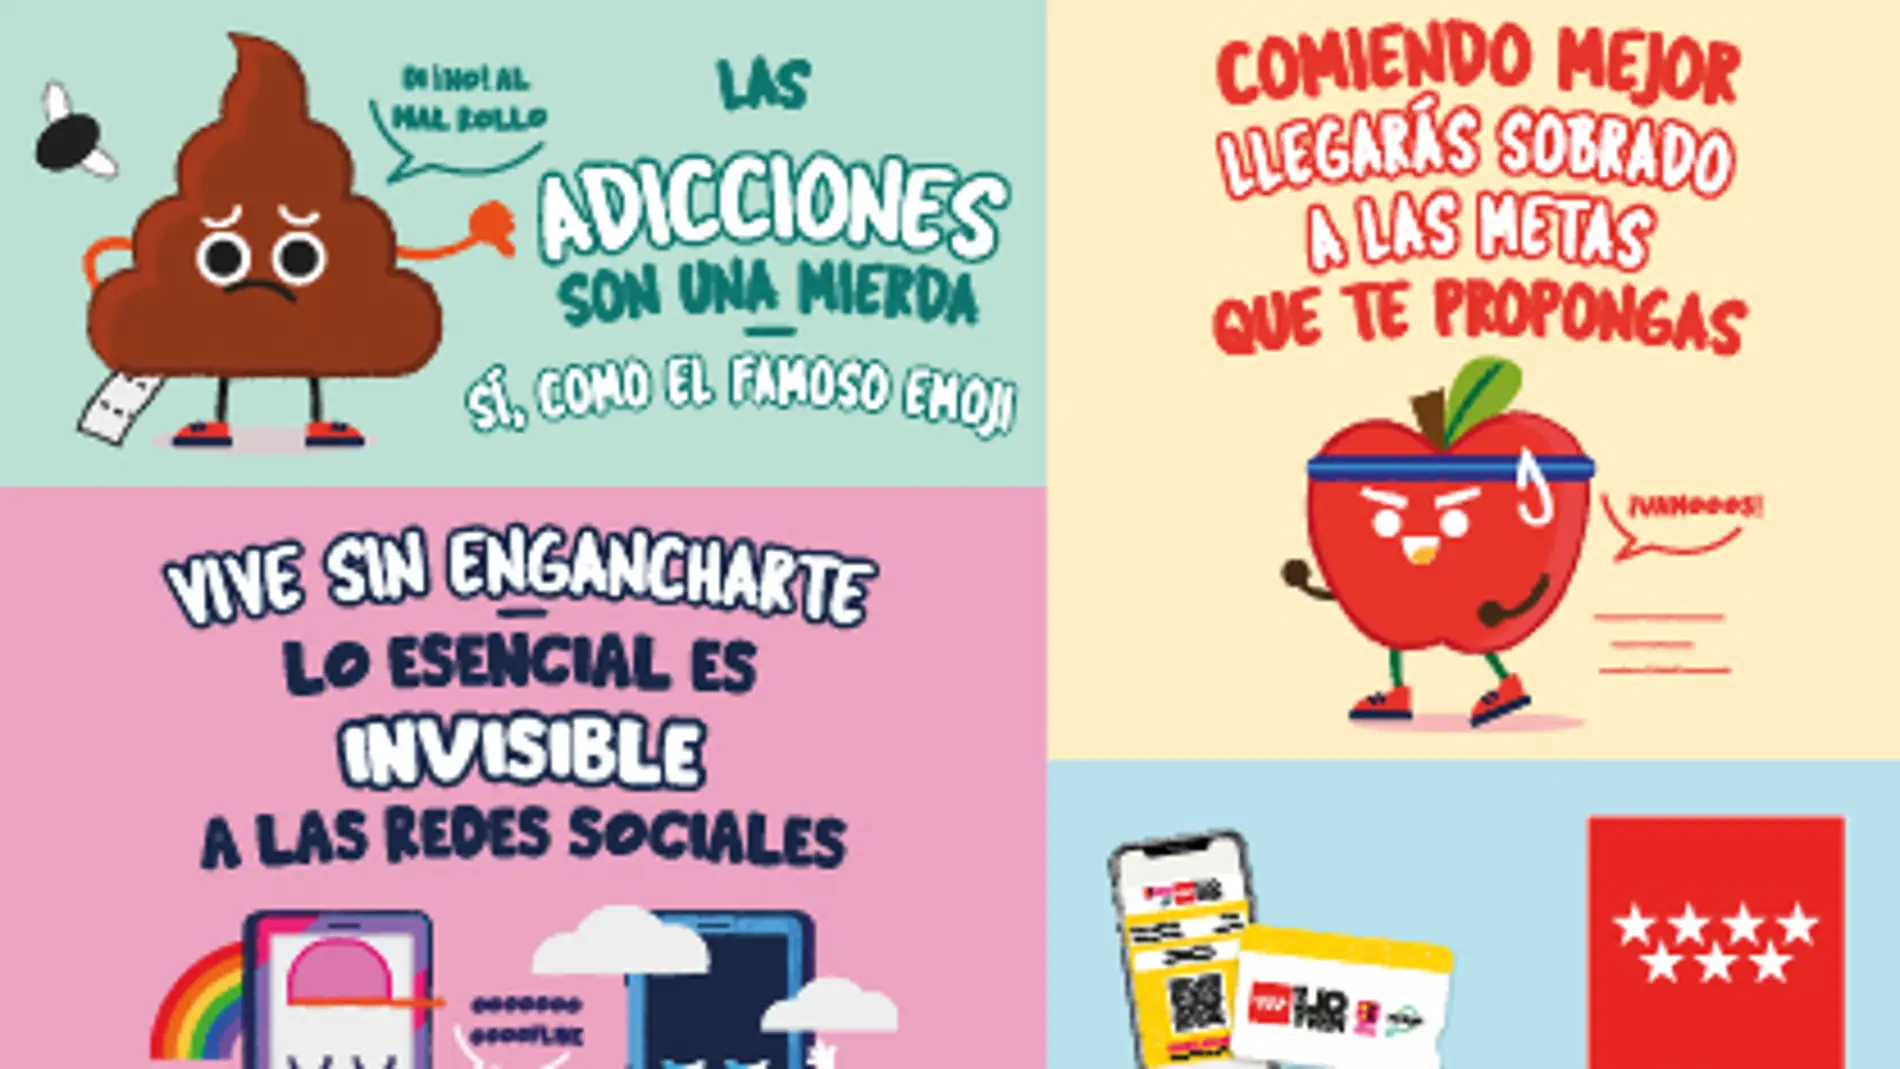 Madrid lanza campaña 'La salud con actitud' para promover hábitos de vida saludable entre los jóvenes | Onda Cero